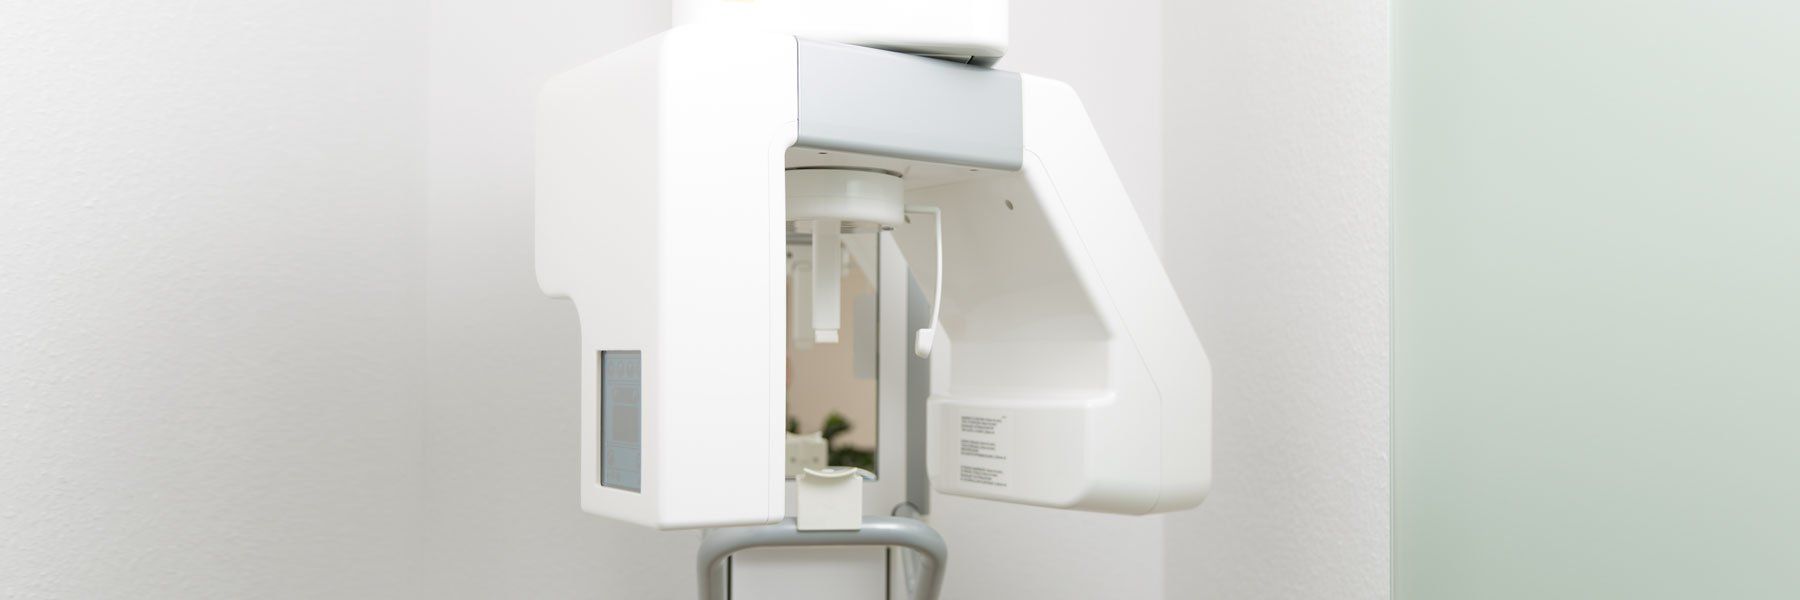 Zahnarztpraxis Robert Gutowski – Röntgengerät